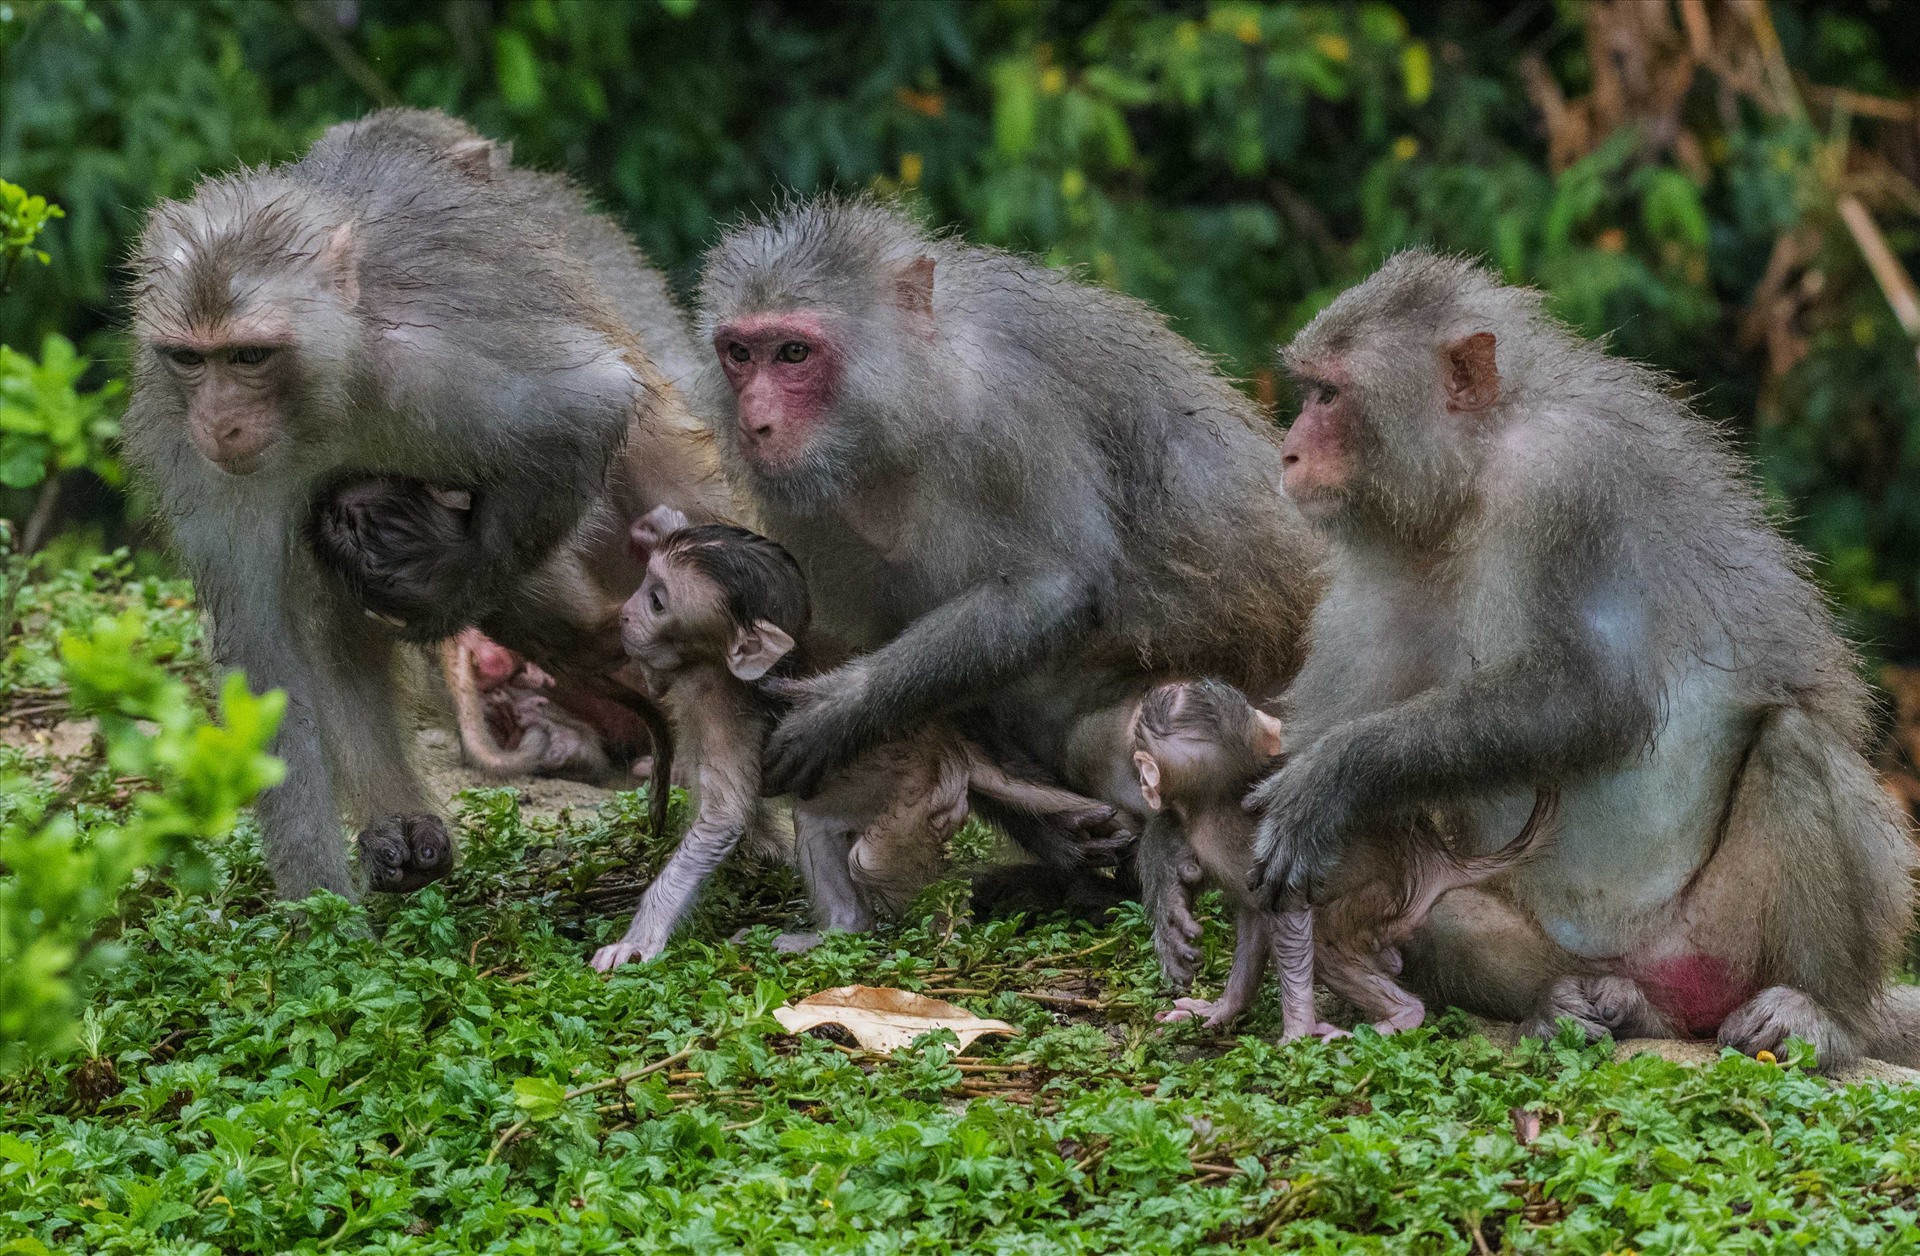 Khỉ là loài sống theo bầy và gia đình khỉ luôn gắn kết với nhau từ đời này qua đời khác. Lúc nghỉ ngơi, đàn khỉ bắt chấy, ôm ấp nhau như một sự thể hiện yêu thương và những chú khỉ con đu mình trên cành cây vừa ăn lá cây chẳng khác nào những đứa trẻ thơ. Ảnh: Nguyễn Công Hưng